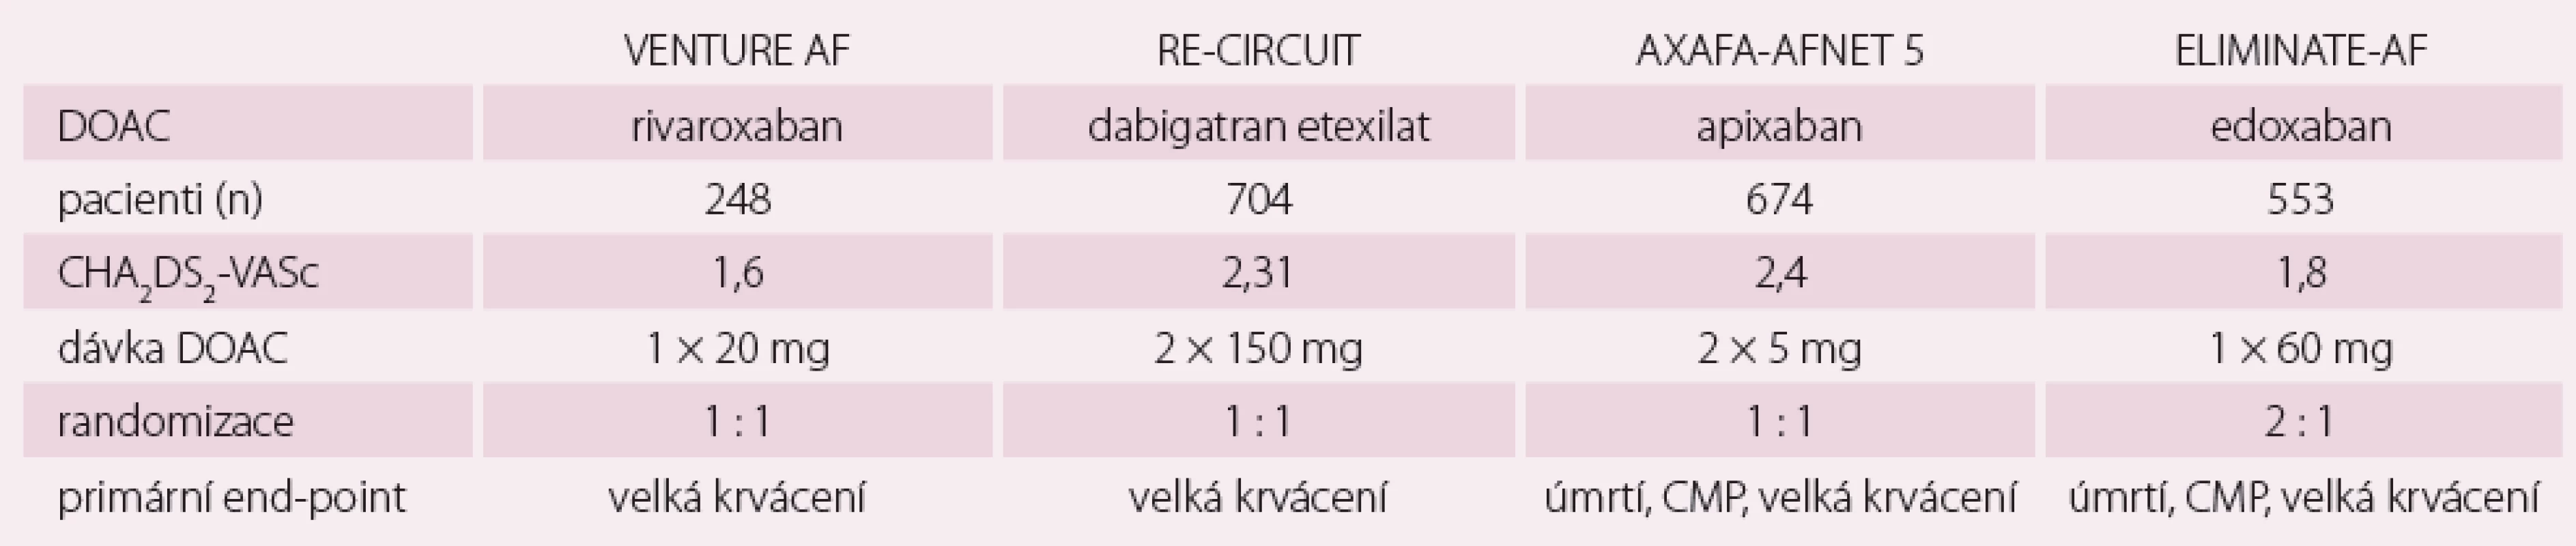 Prospektivní, multicentrické, randomizované, nezaslepené studie s nepřerušeným podáváním DOAK (rivaroxaban, dabigatran
etexilat, apixaban, edoxaban) v porovnání s nepřerušeným podáním warfarinu s cílovým INR 2-3 u katetrizační ablace fibrilace síní.